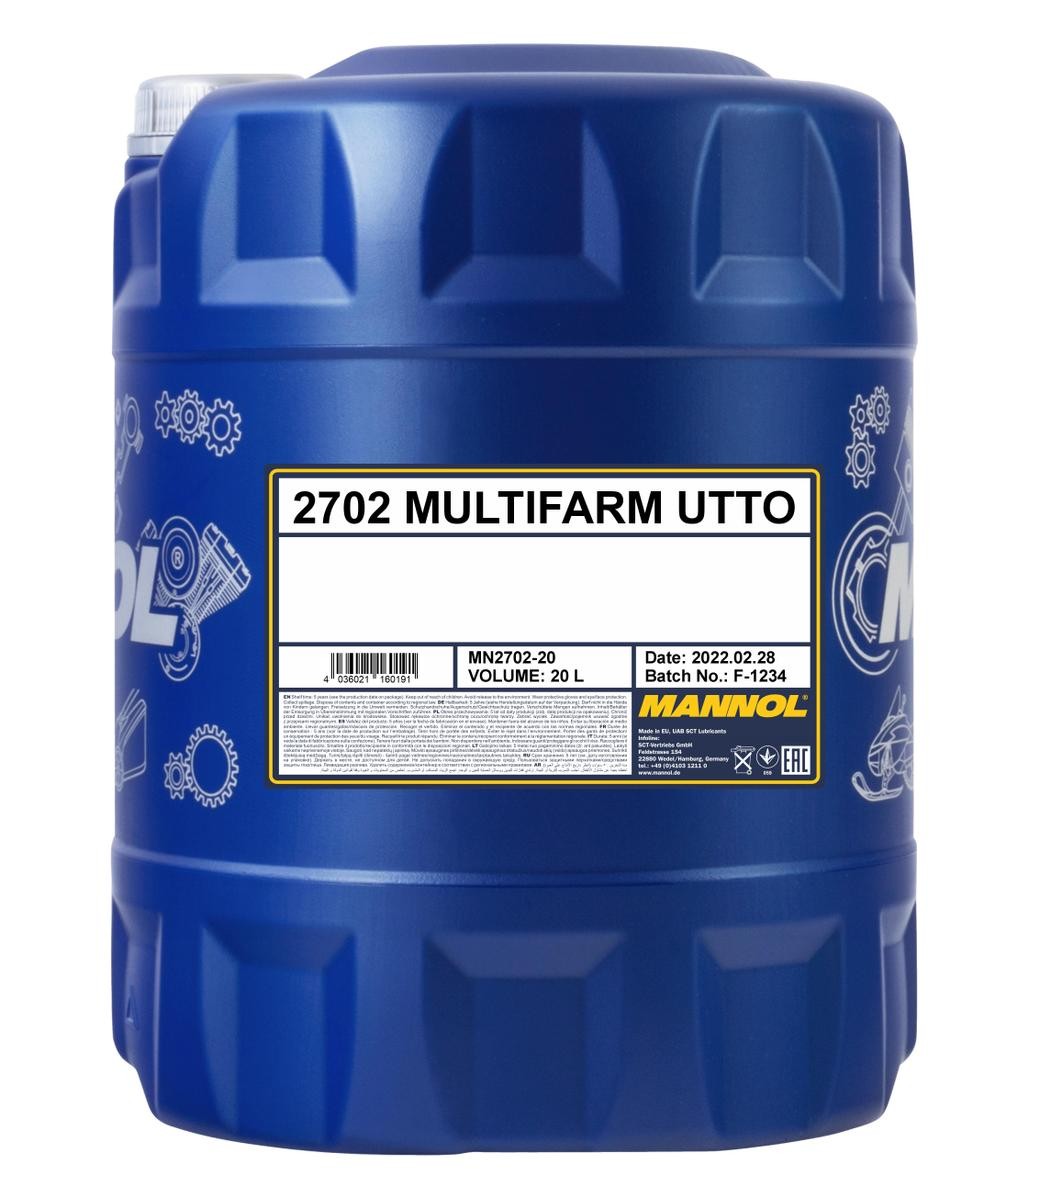 Motorenöl API GL 4 MANNOL günstig - MN2702-20 Multifarm, UTTO